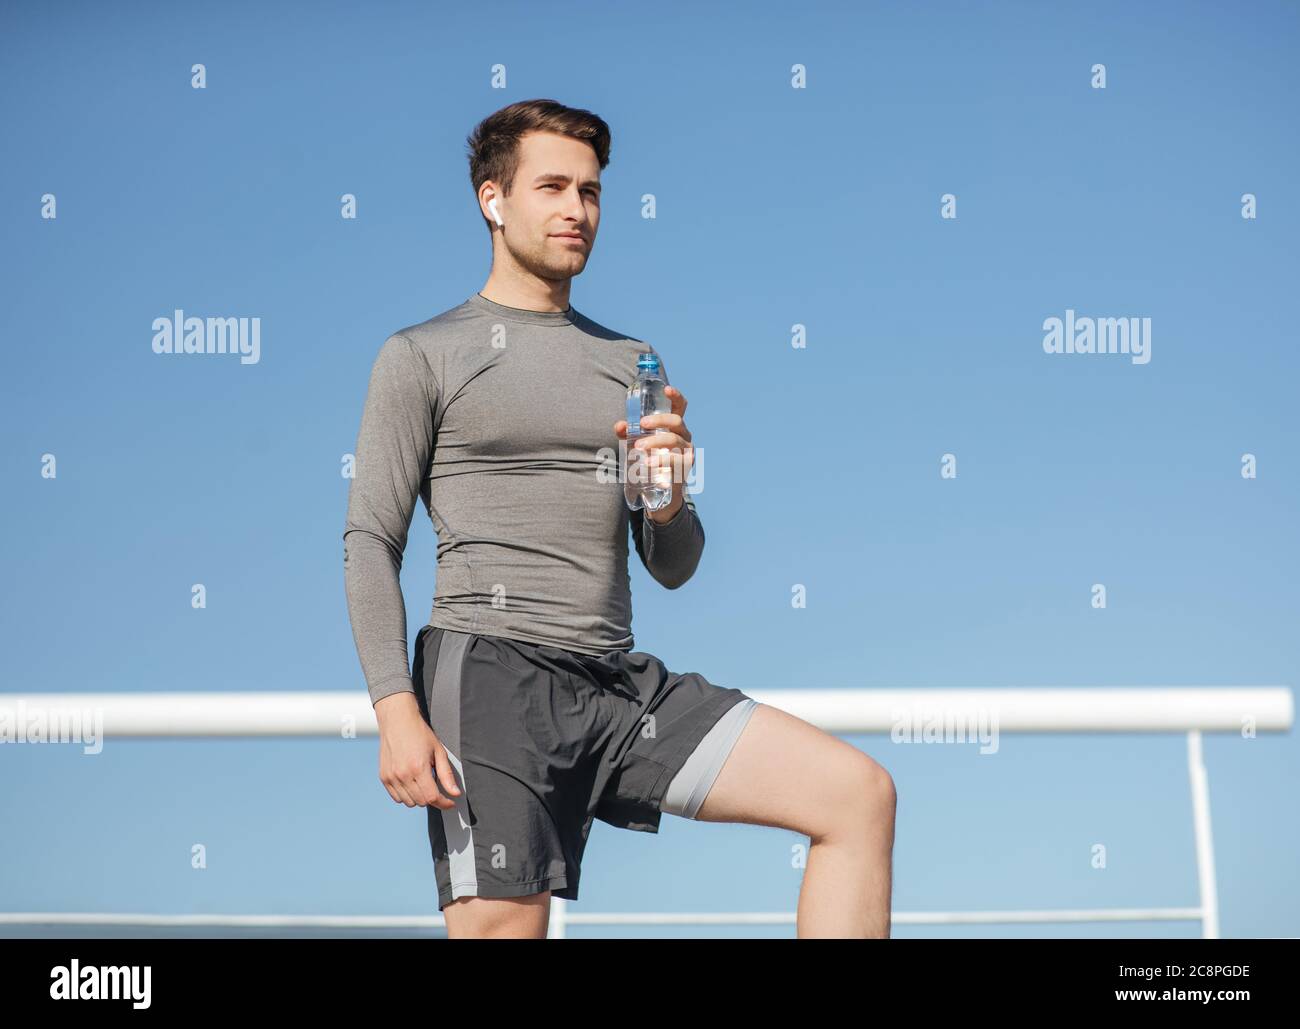 Santé et soins du corps. Un homme musclé et élégant dans les vêtements de sport, avec un casque sans fil tenant une bouteille d'eau sur fond bleu ciel Banque D'Images